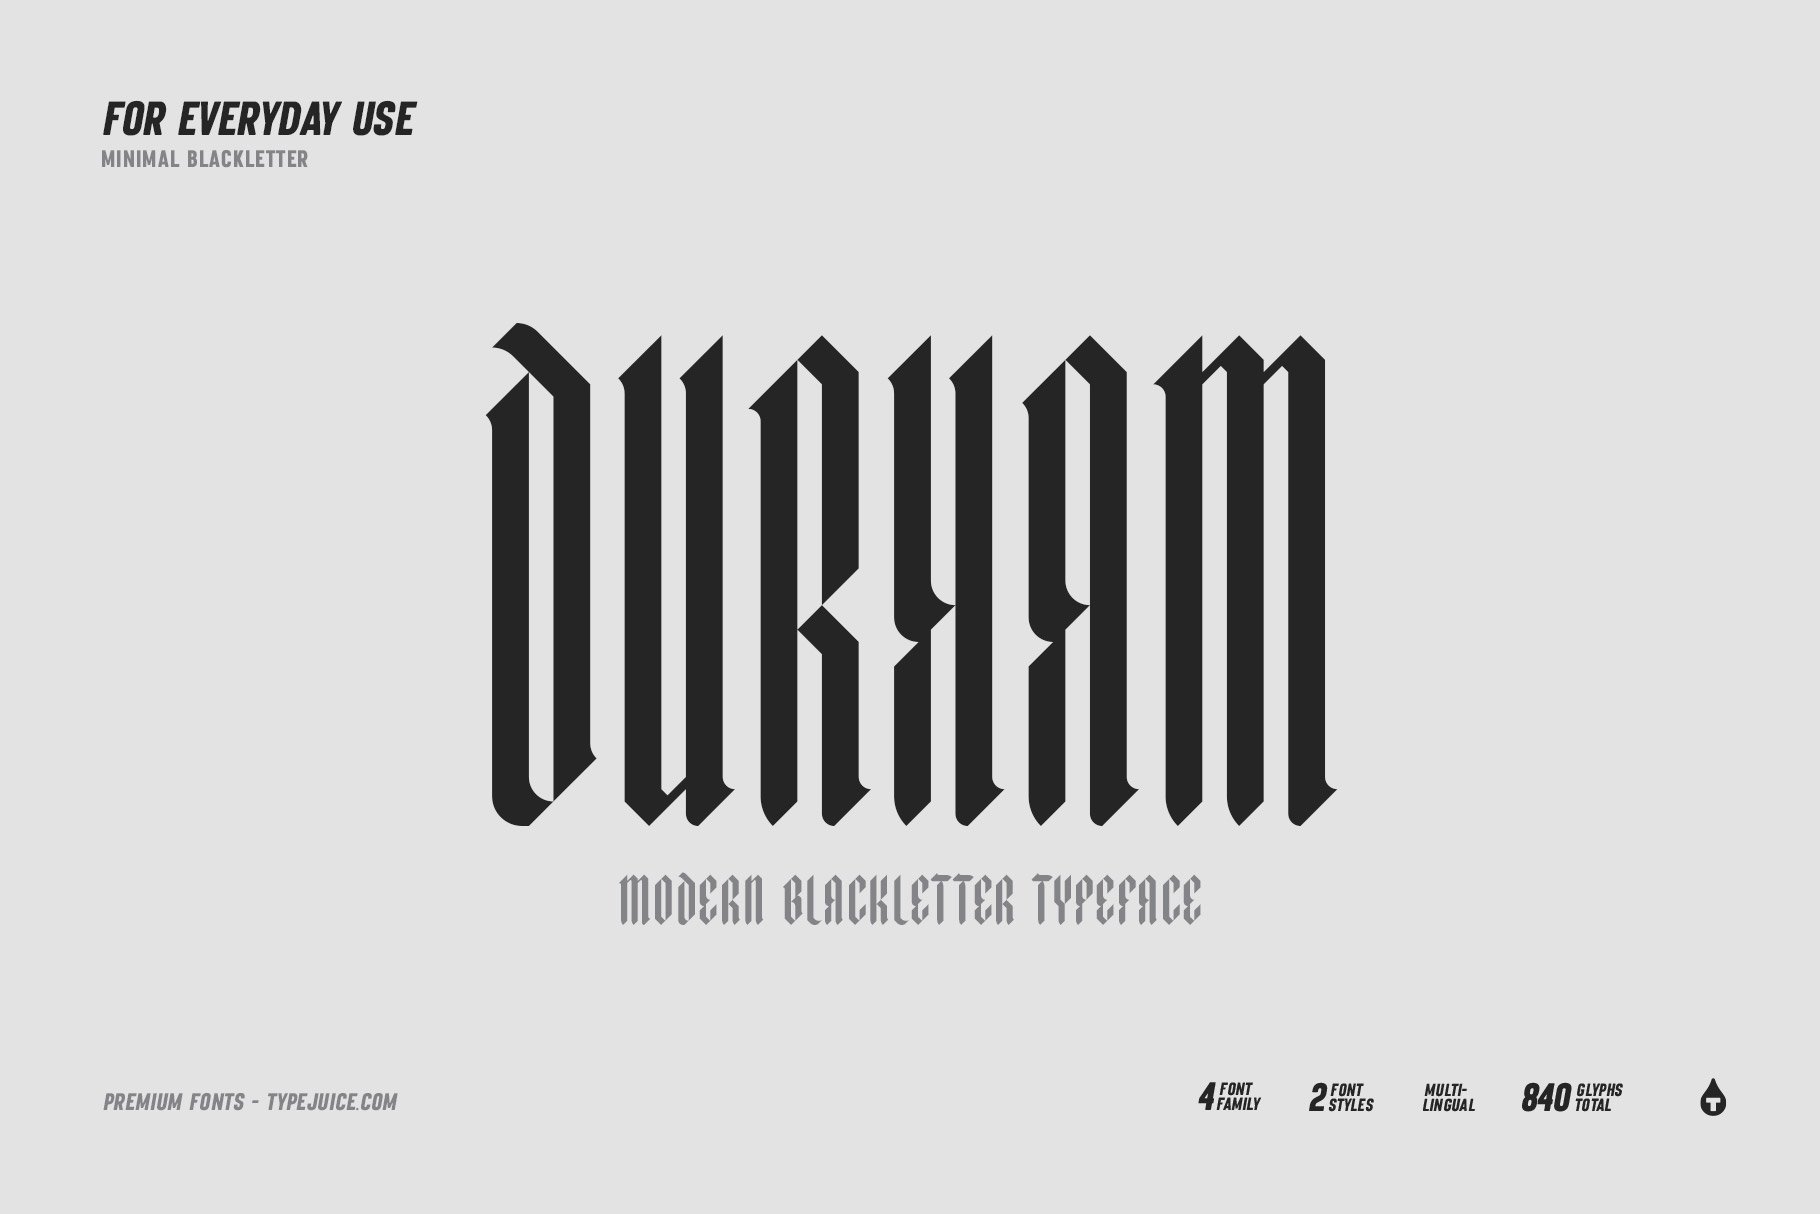 Durham Modern Blackletter Typeface cover image.